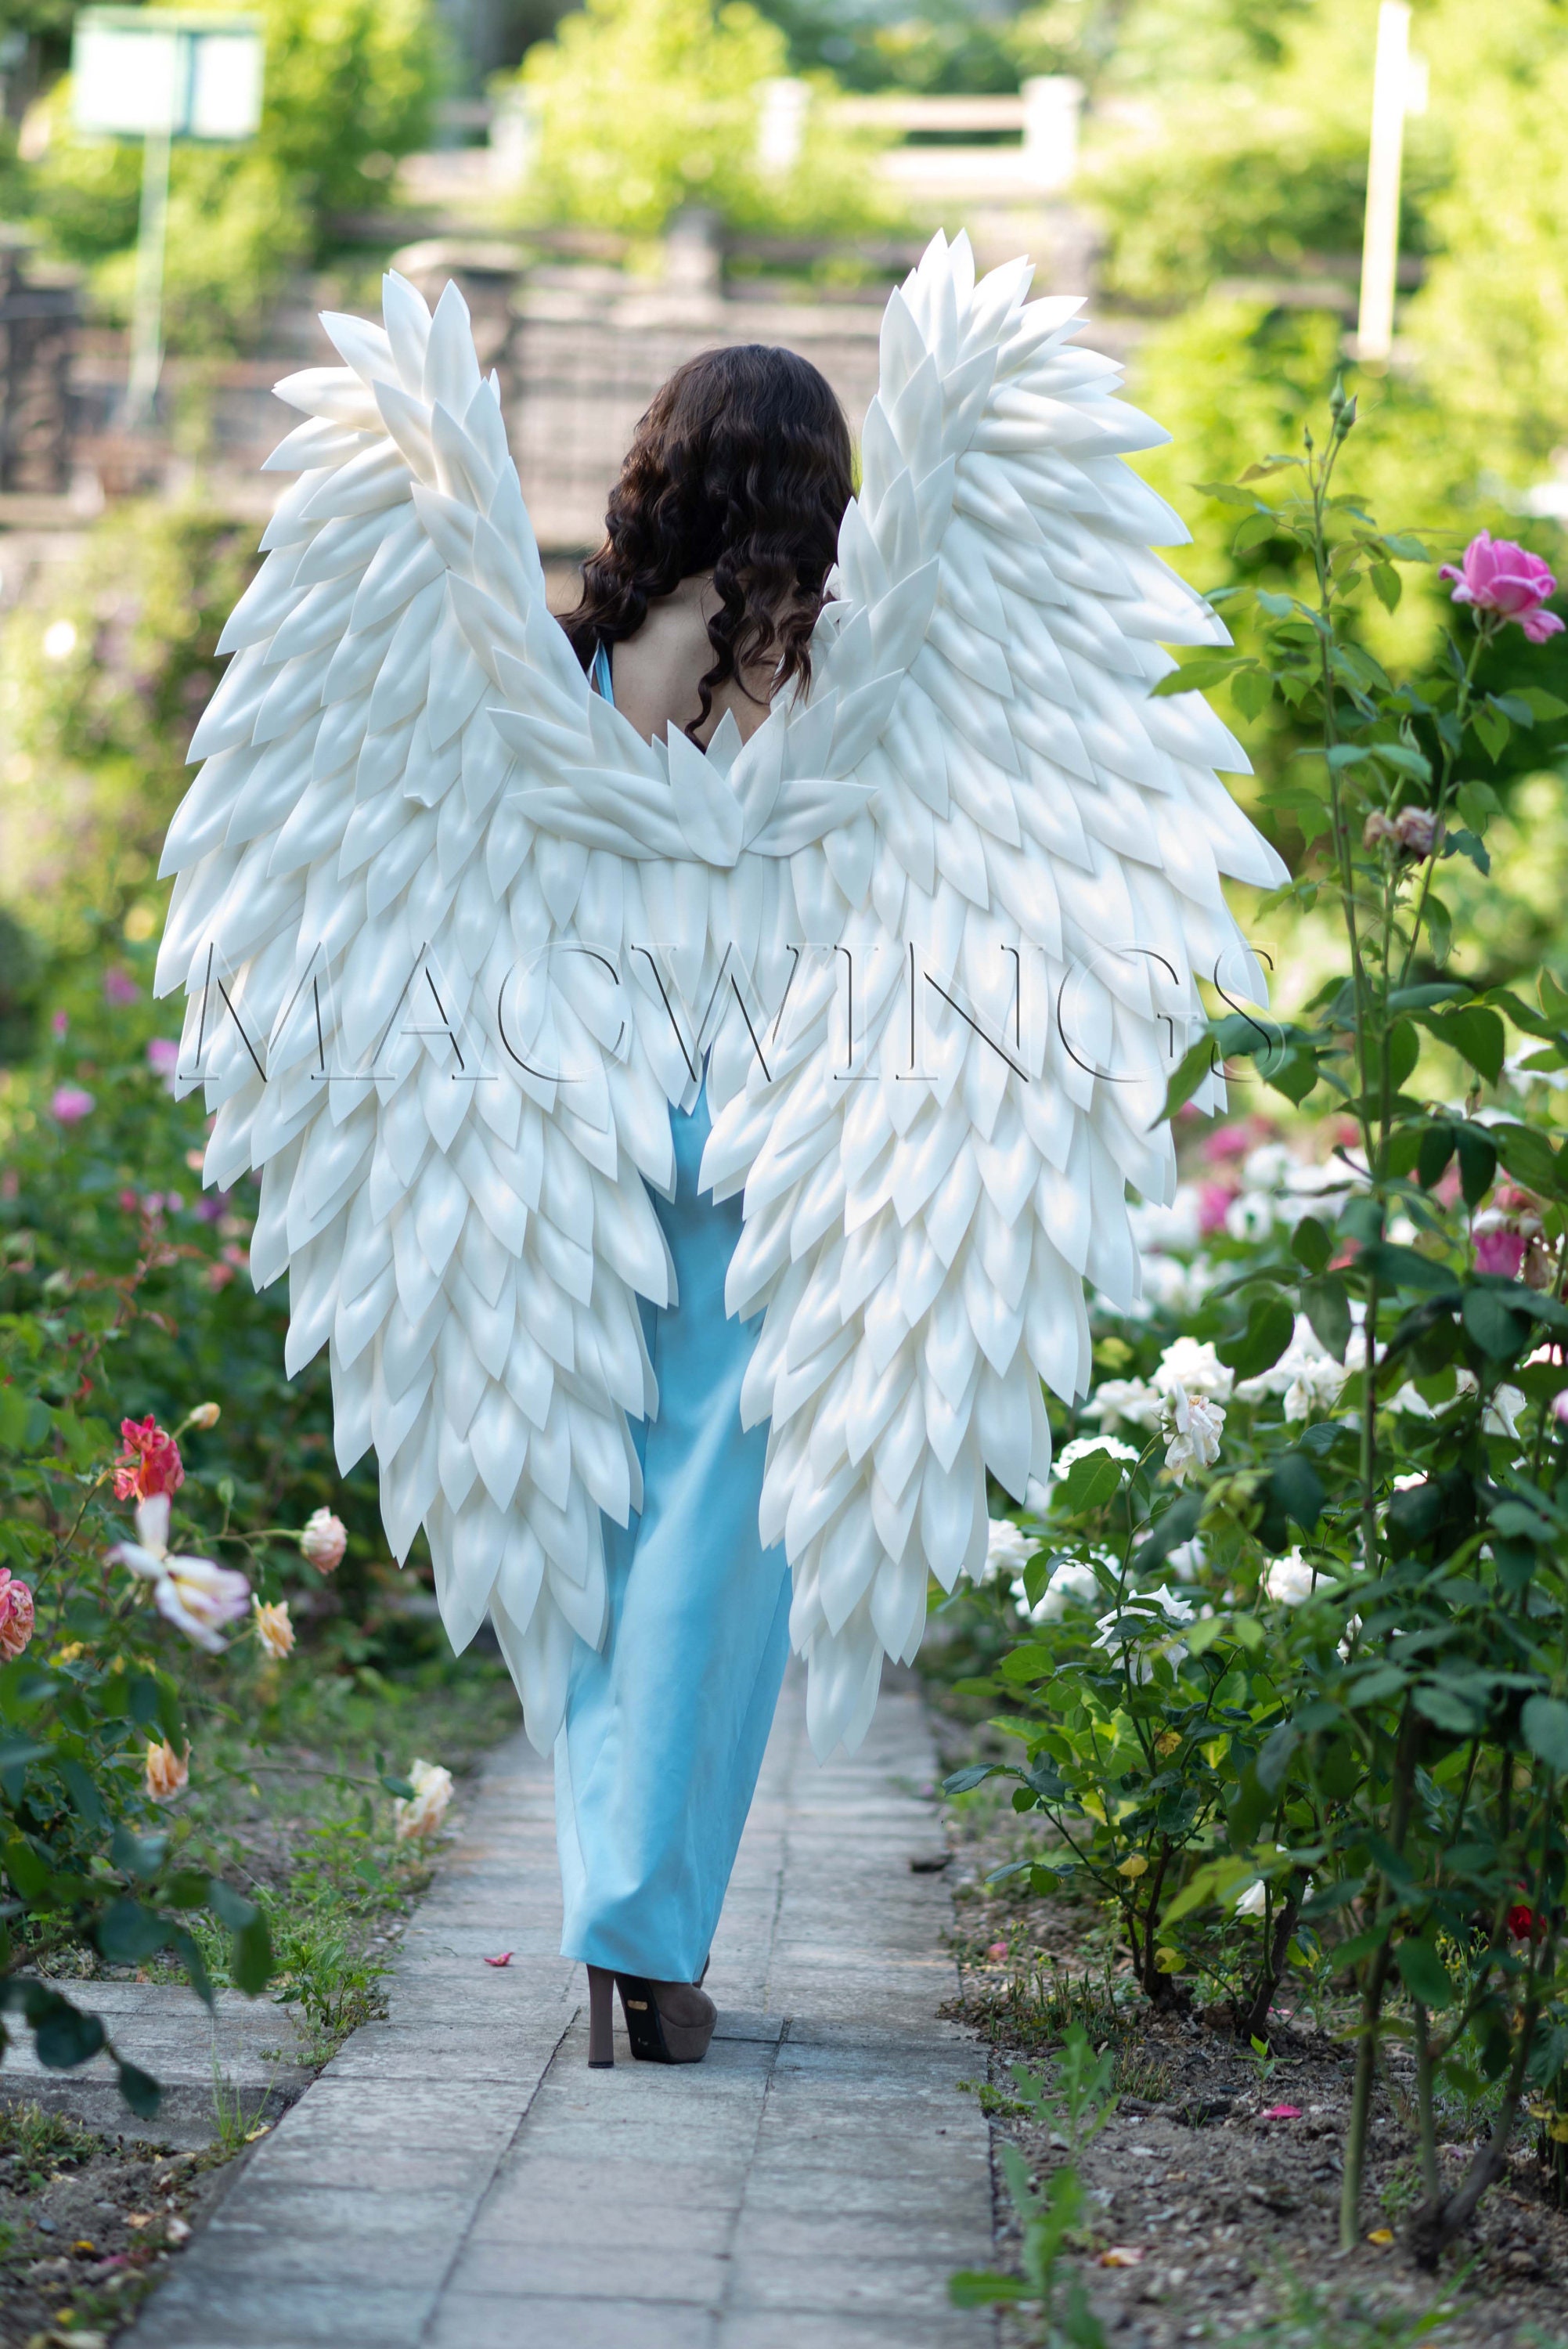 ali d'oro di un angelo cosplay ali reali, costume da angelo di